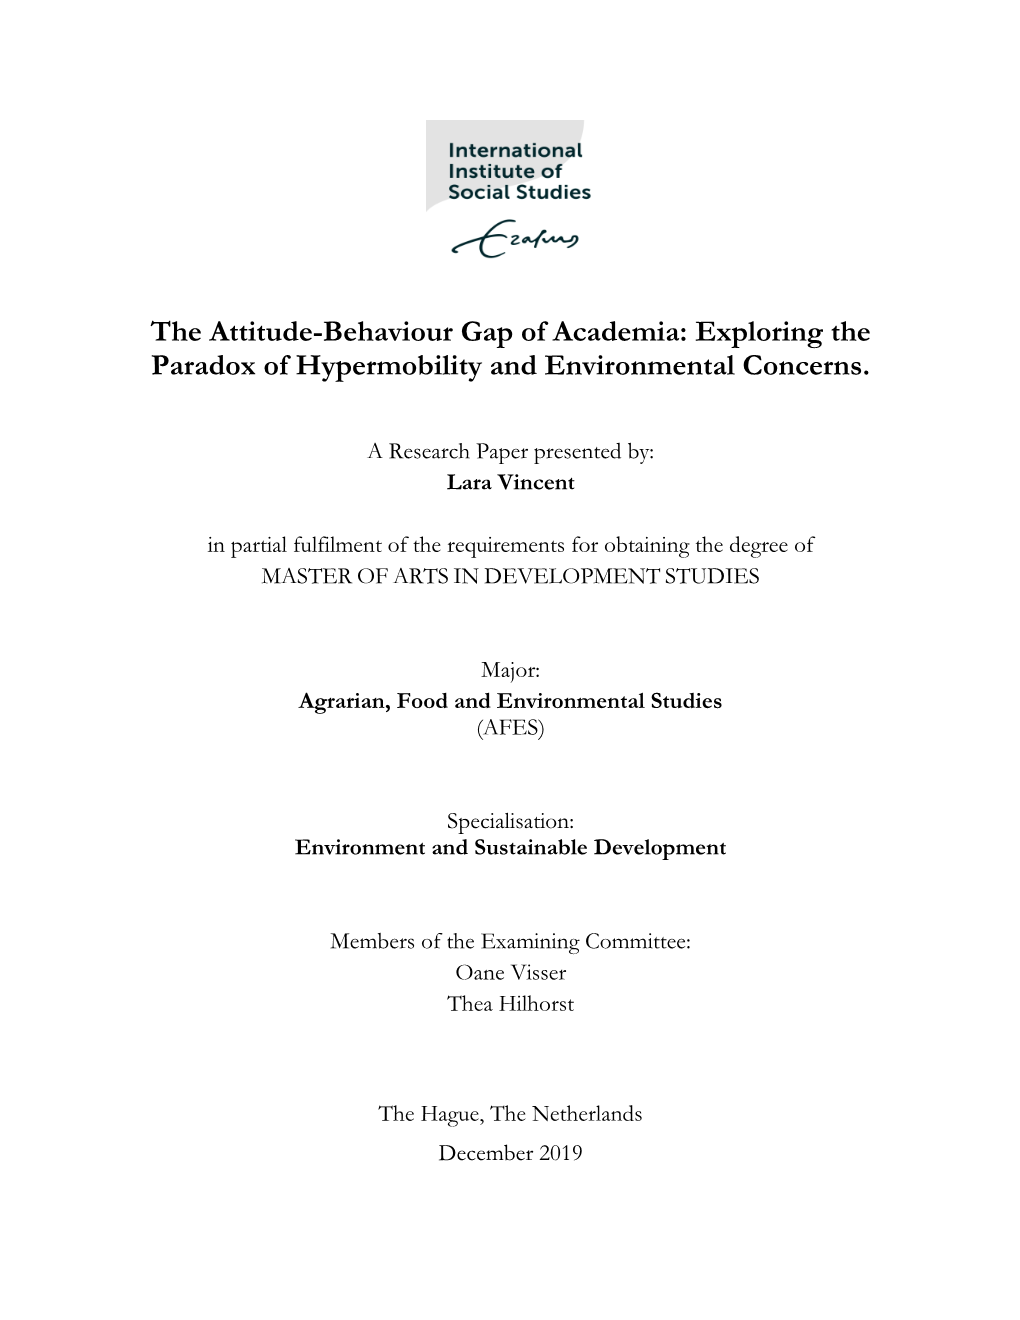 The Attitude-Behaviour Gap of Academia: Exploring the Paradox of Hypermobility and Environmental Concerns